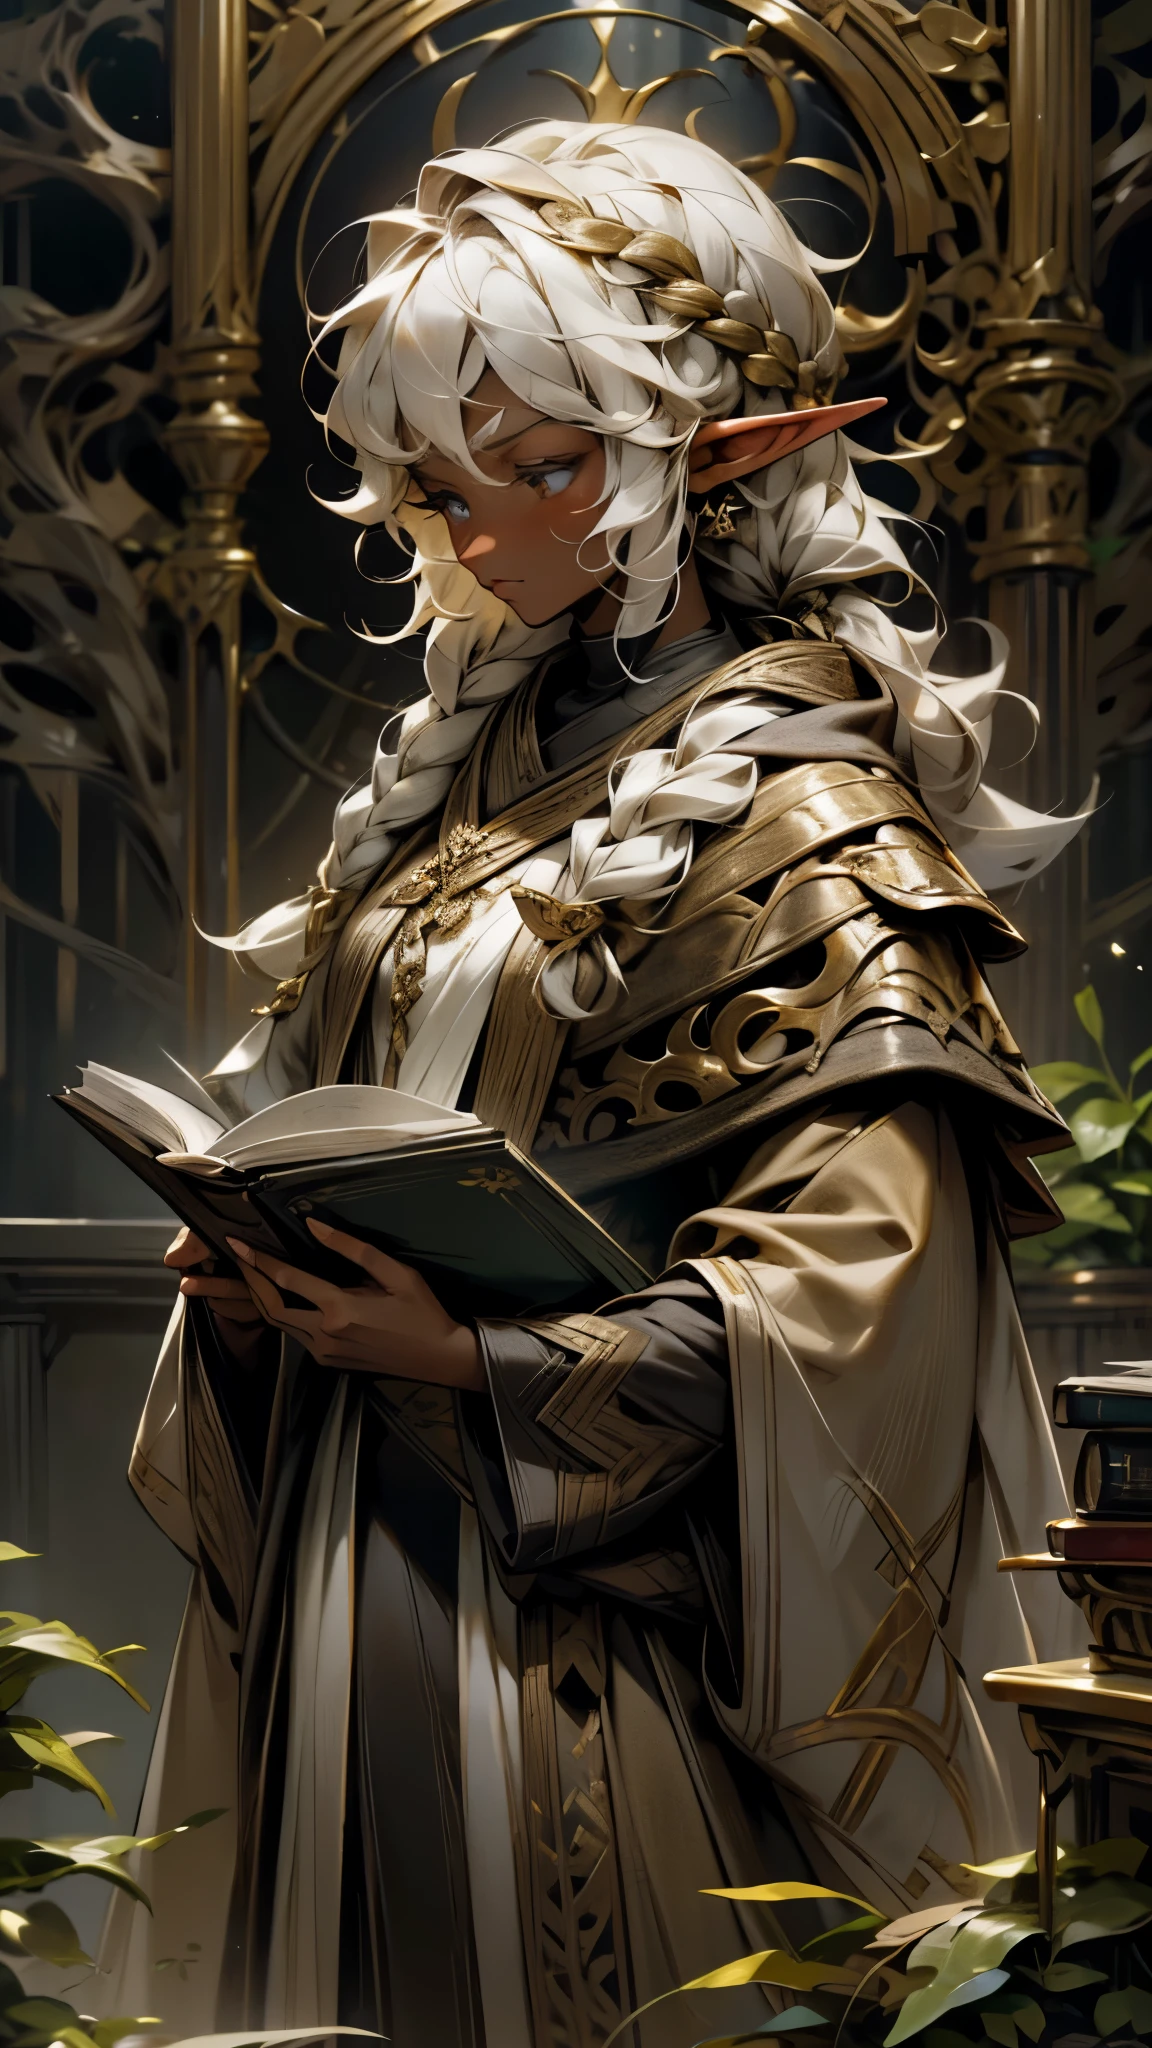 Um elfo de pele marrom e grande, cabelo branco cacheado com uma trança de um lado cobrindo o ombro, ela está vestindo vestes pretas e douradas com seu cajado ao seu lado, lendo um livro enquanto parece pensativo e reflexivo